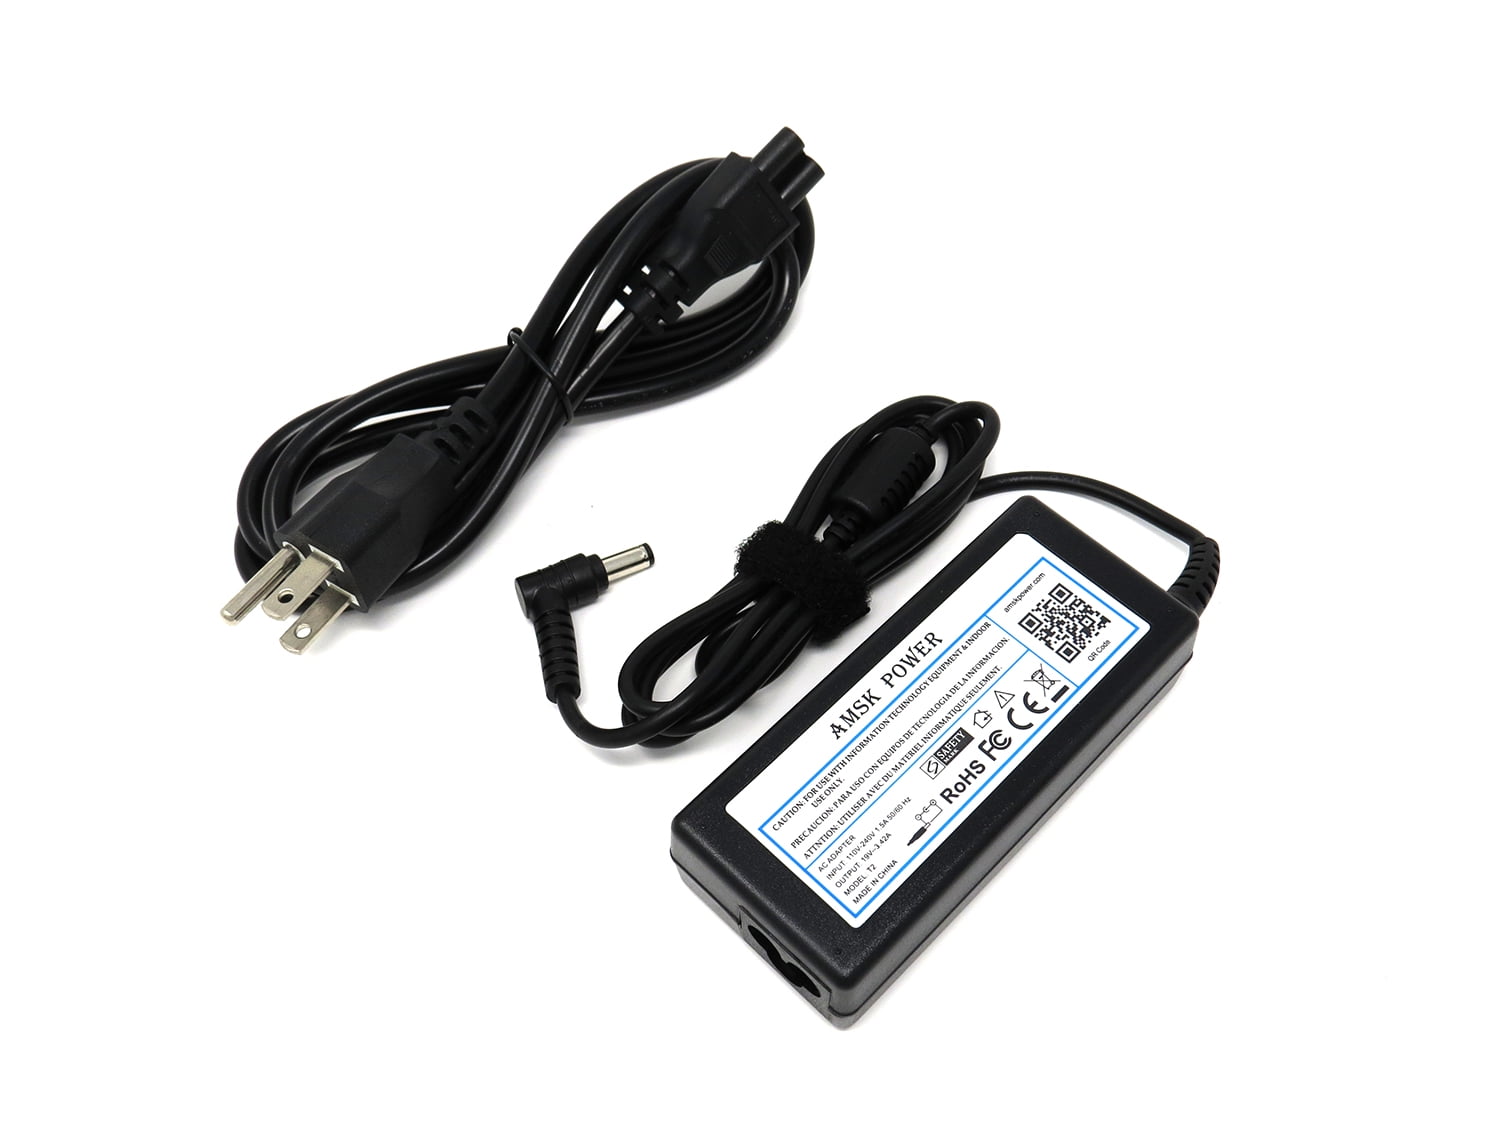 Ac Adapter for ASUS BB, 04G2660047L1, 04G2660031U0, 04G2660031M0, 04G266003163, 04G266003162, 04G2660031T0 04G2660031M1, 04G2660031V0, 04G2660031T3, Notebook Laptop Power Cord - Walmart.com